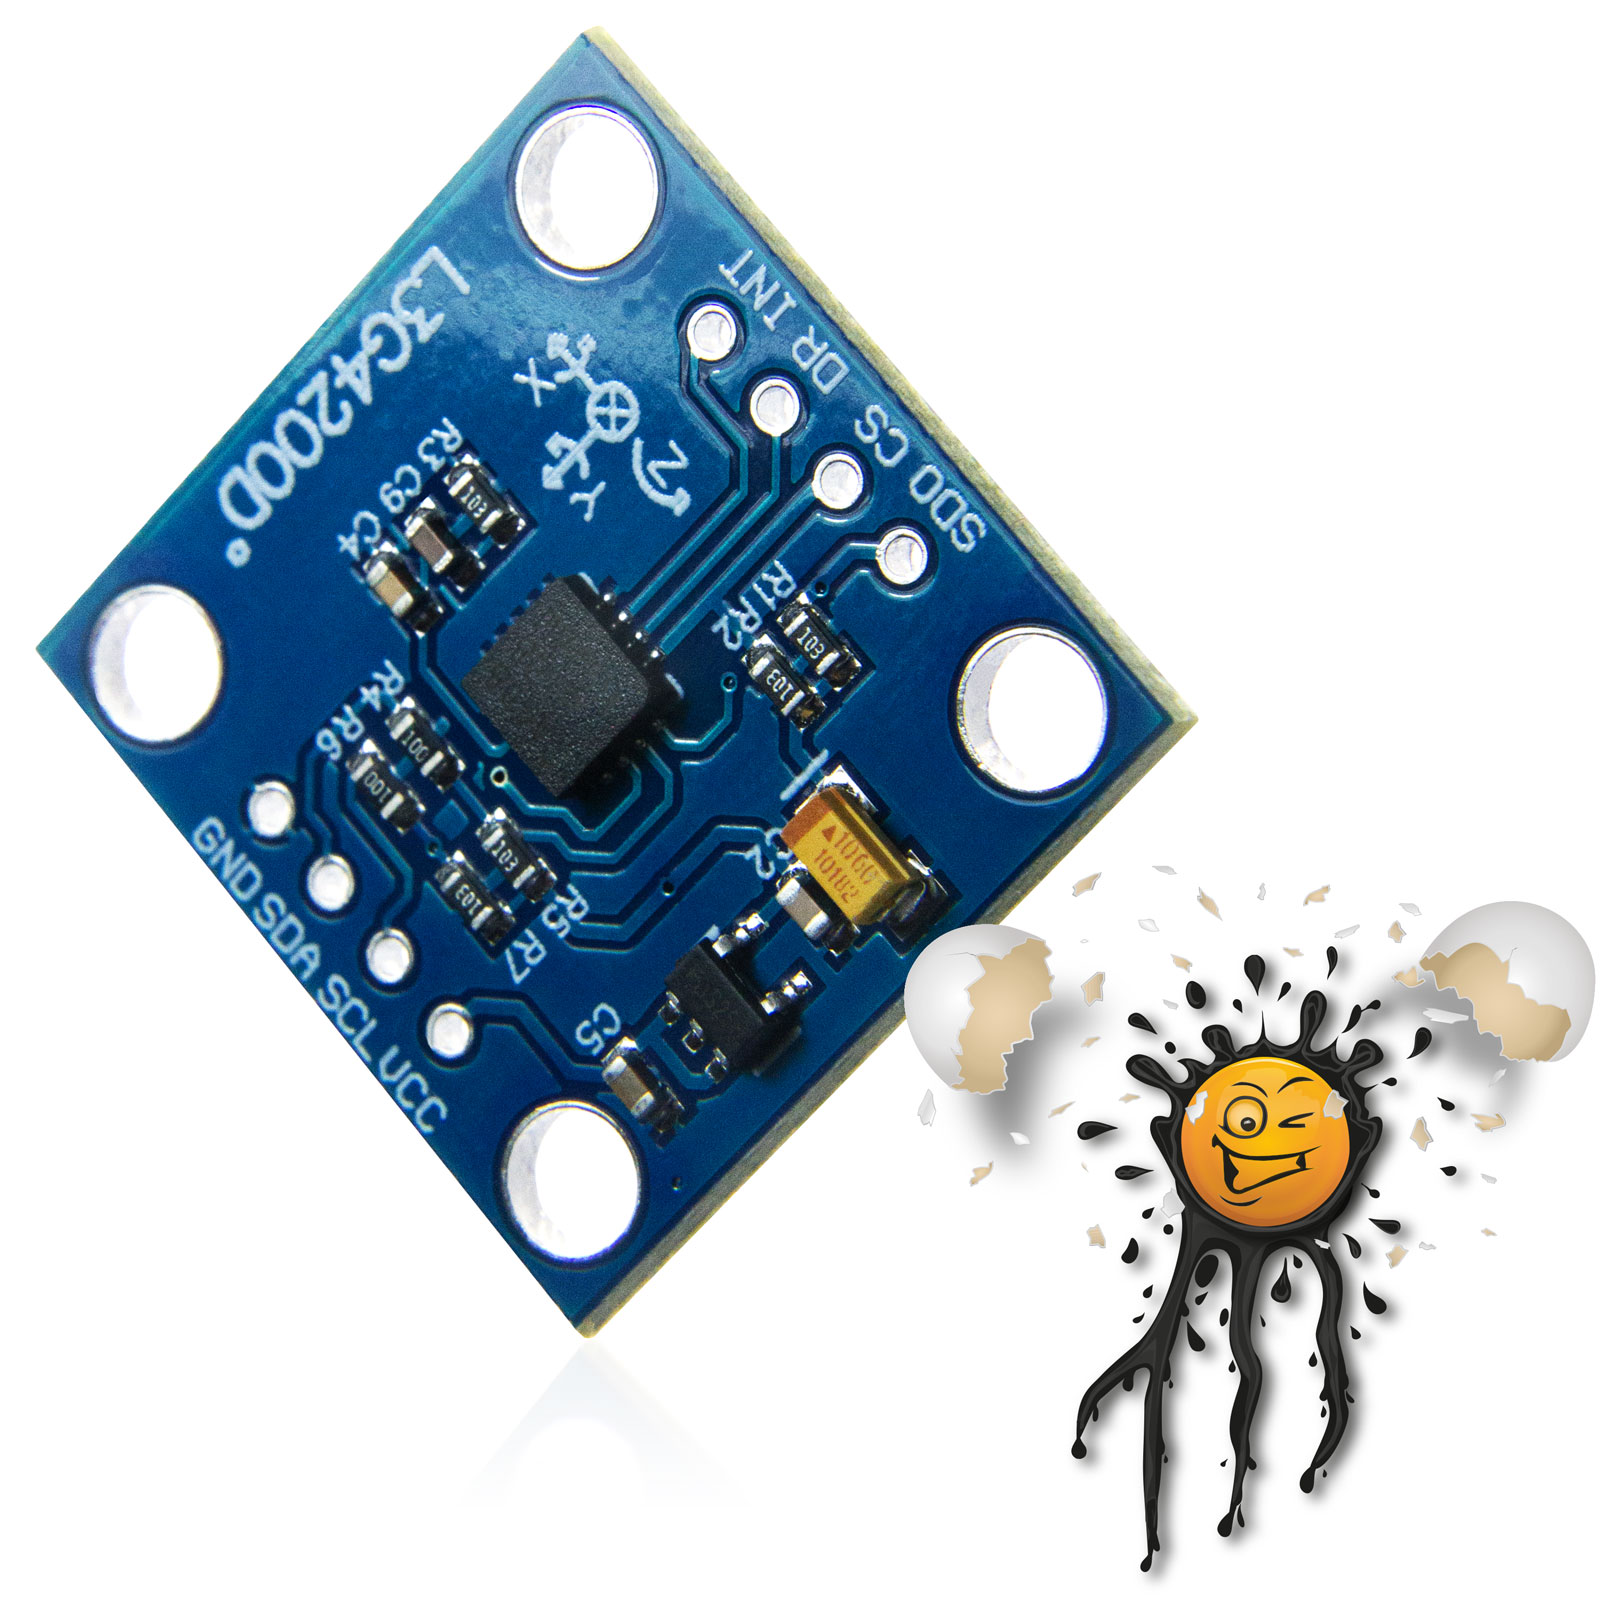 accelerometer SPI I2C sensor module